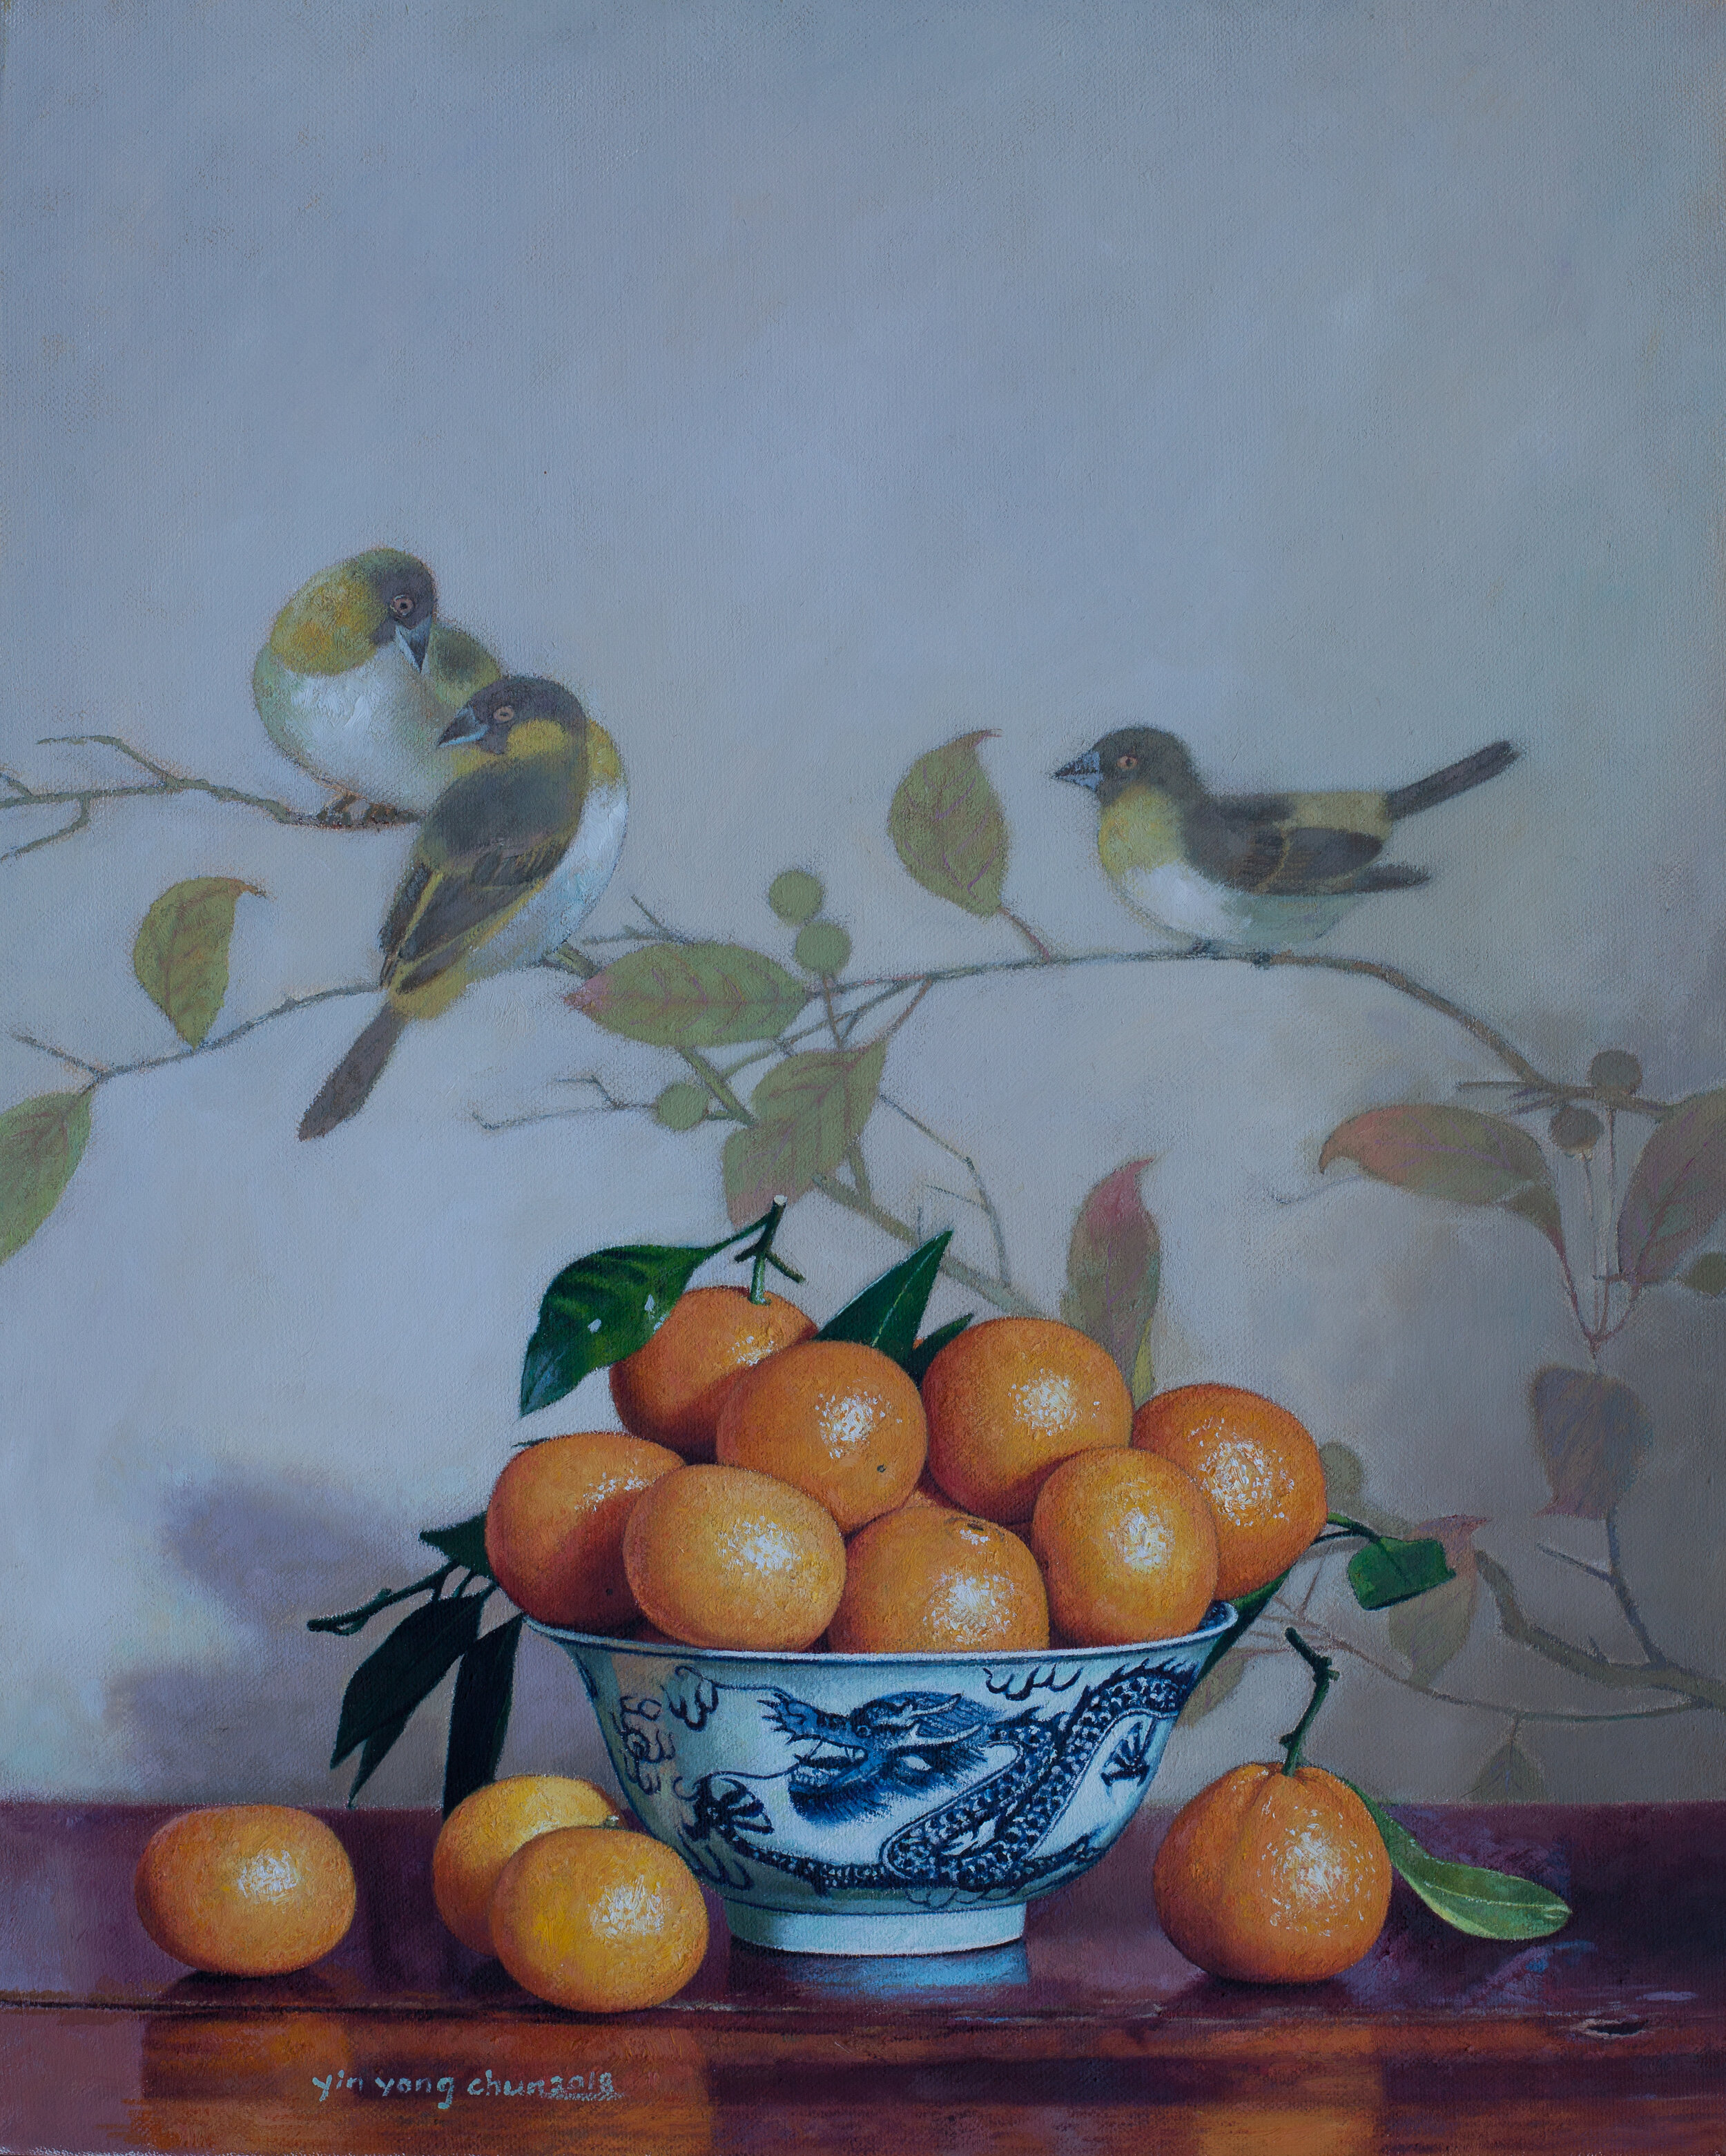 Oranges and birds   2019     16x 20